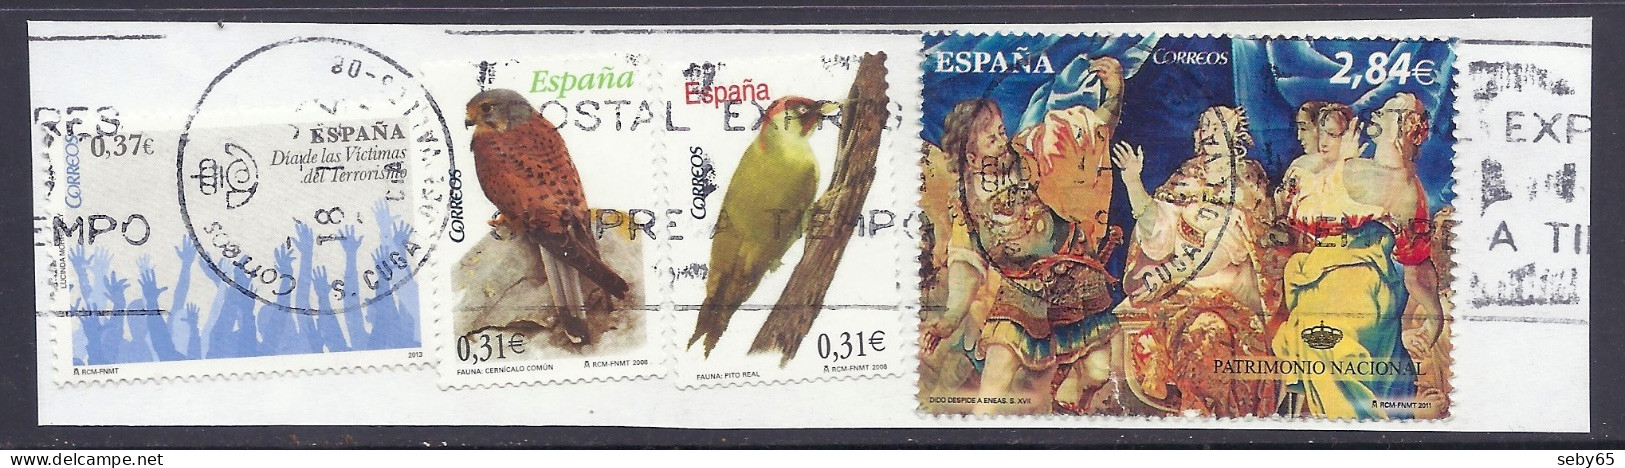 Spain 2008 / 2011 - Fauna, Birds, Patrimonio Nacional, Tapices, Heritage, Eneas, Victimas Terrorismo - Different Used - Used Stamps